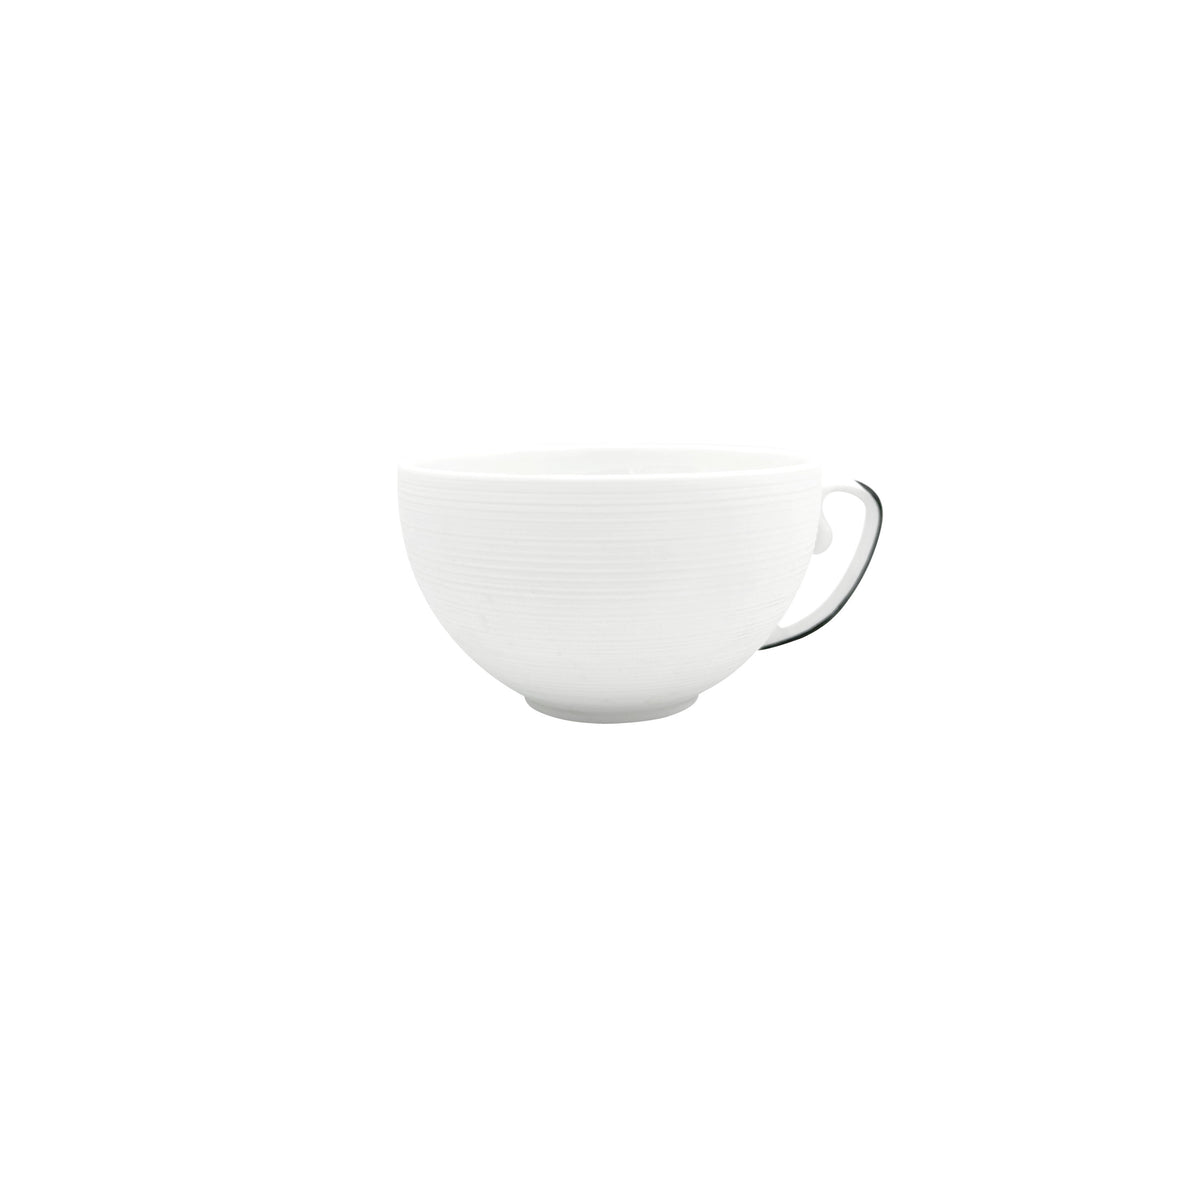 HEMISPHERE Black Bakelite - Tea set (cup & saucer)